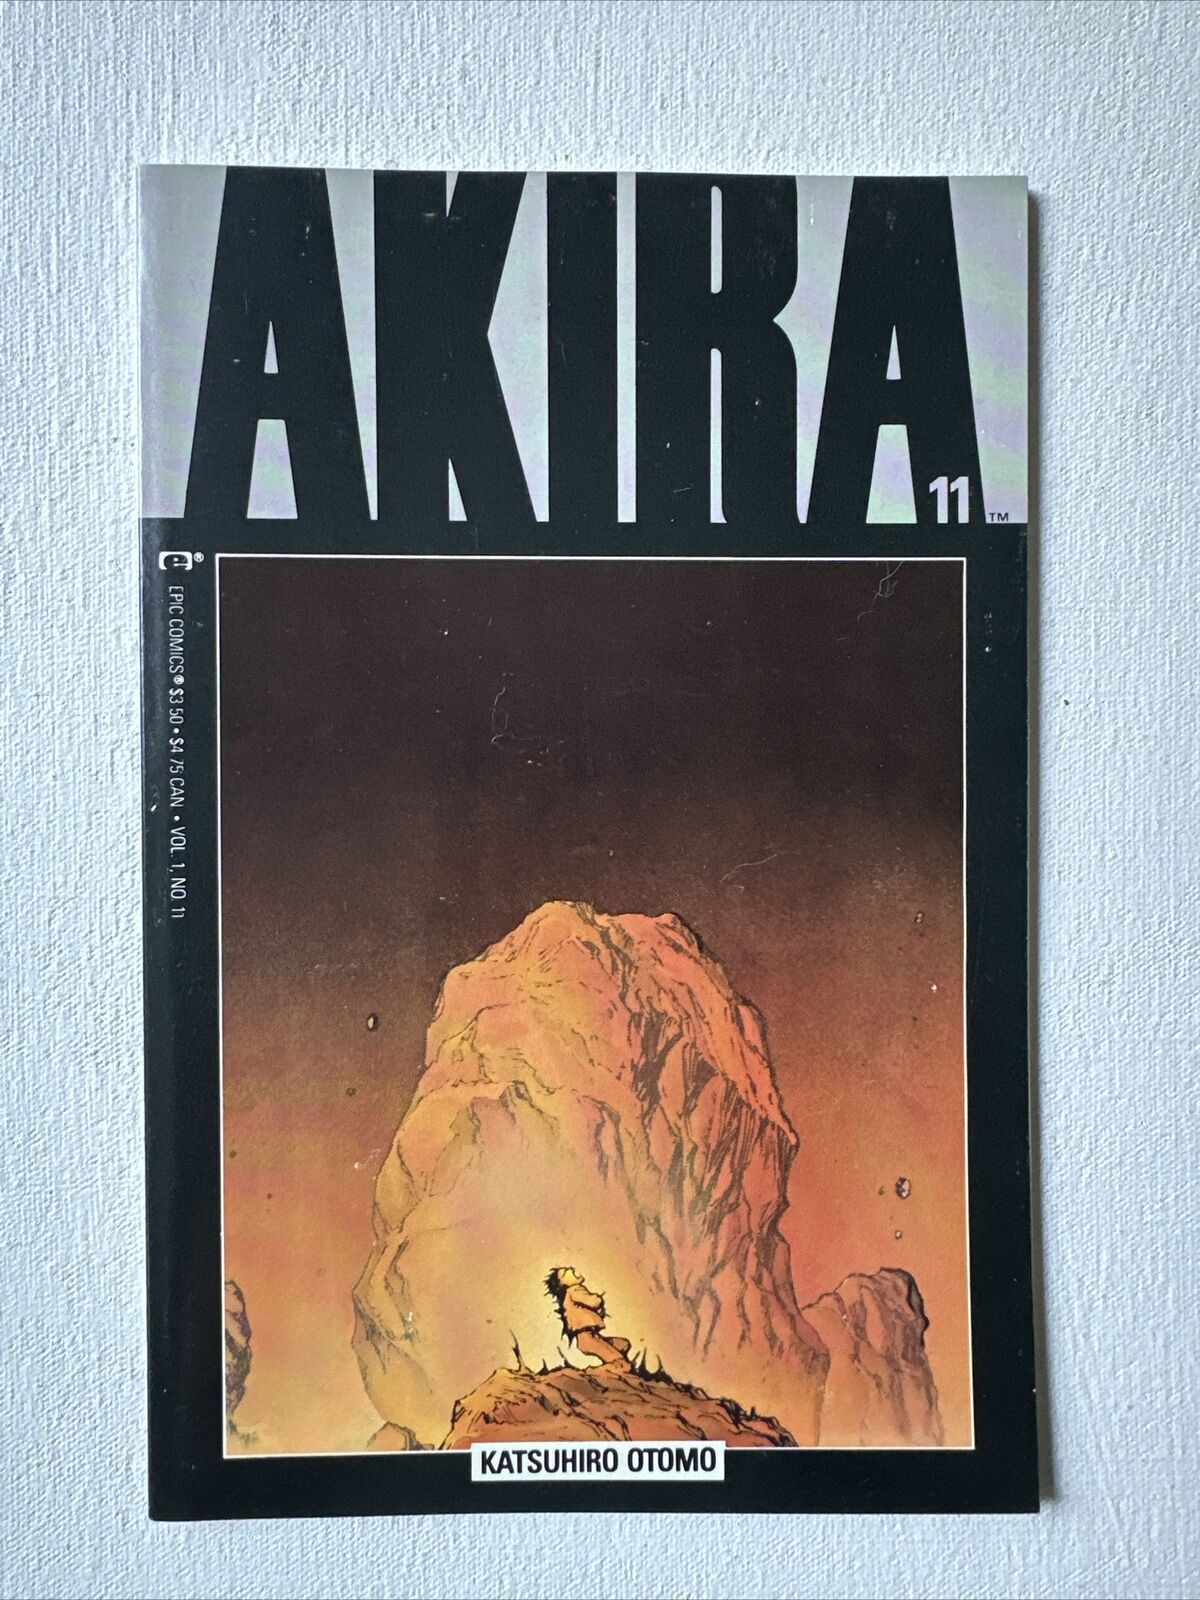 AKIRA #11 (Marvel/Epic, 1988) VF+ Katsuhiro Otomo